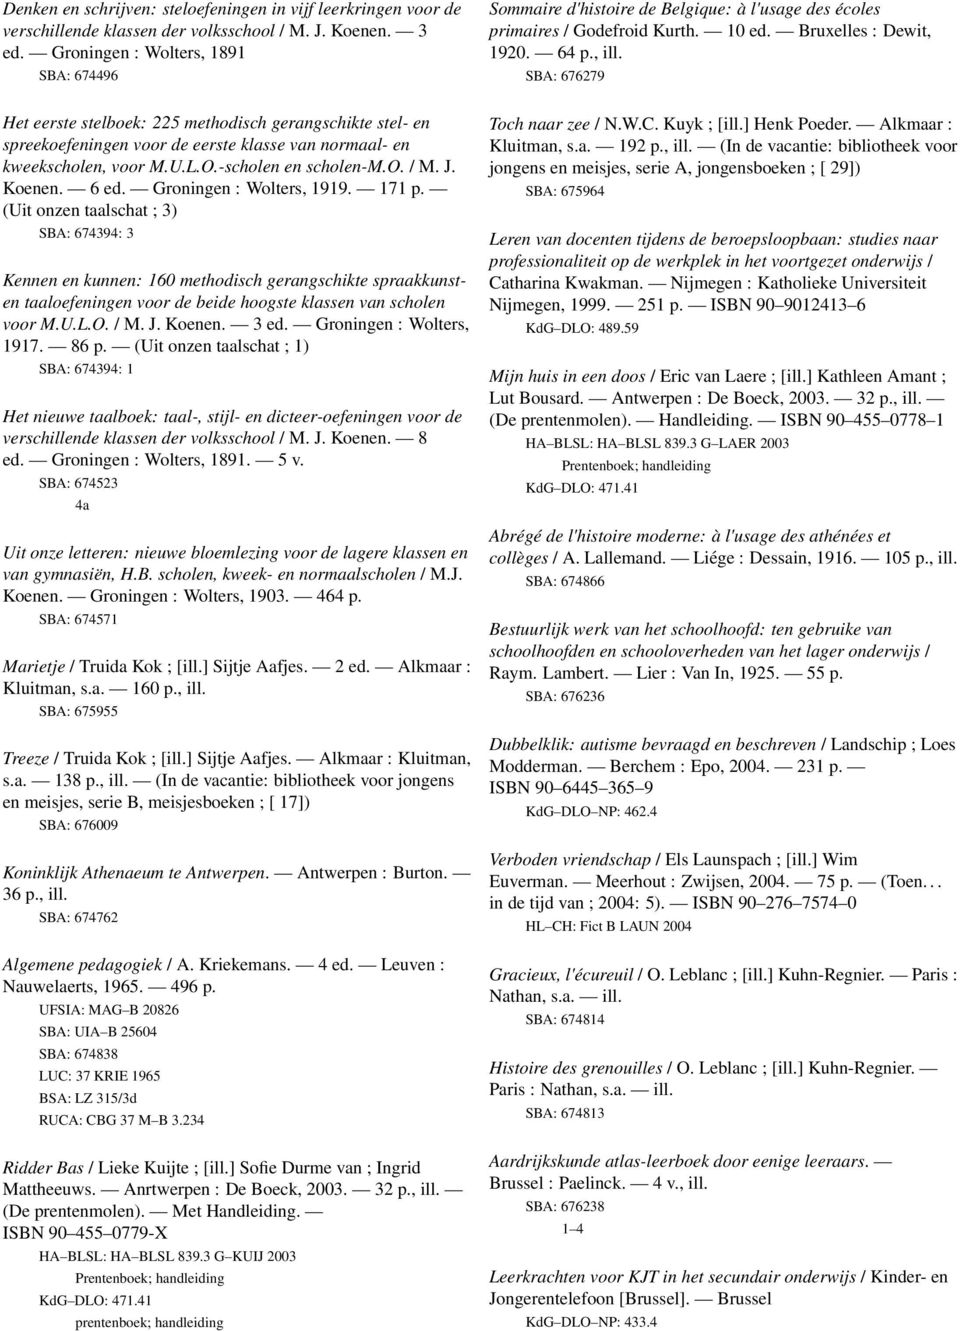 SBA: 67679 Het eerste stelboek: 5 methodisch gerangschikte stel- en spreekoefeningen voor de eerste klasse van normaal- en kweekscholen, voor M.U.L.O.-scholen en scholen-m.o. / M. J. Koenen. 6 ed.